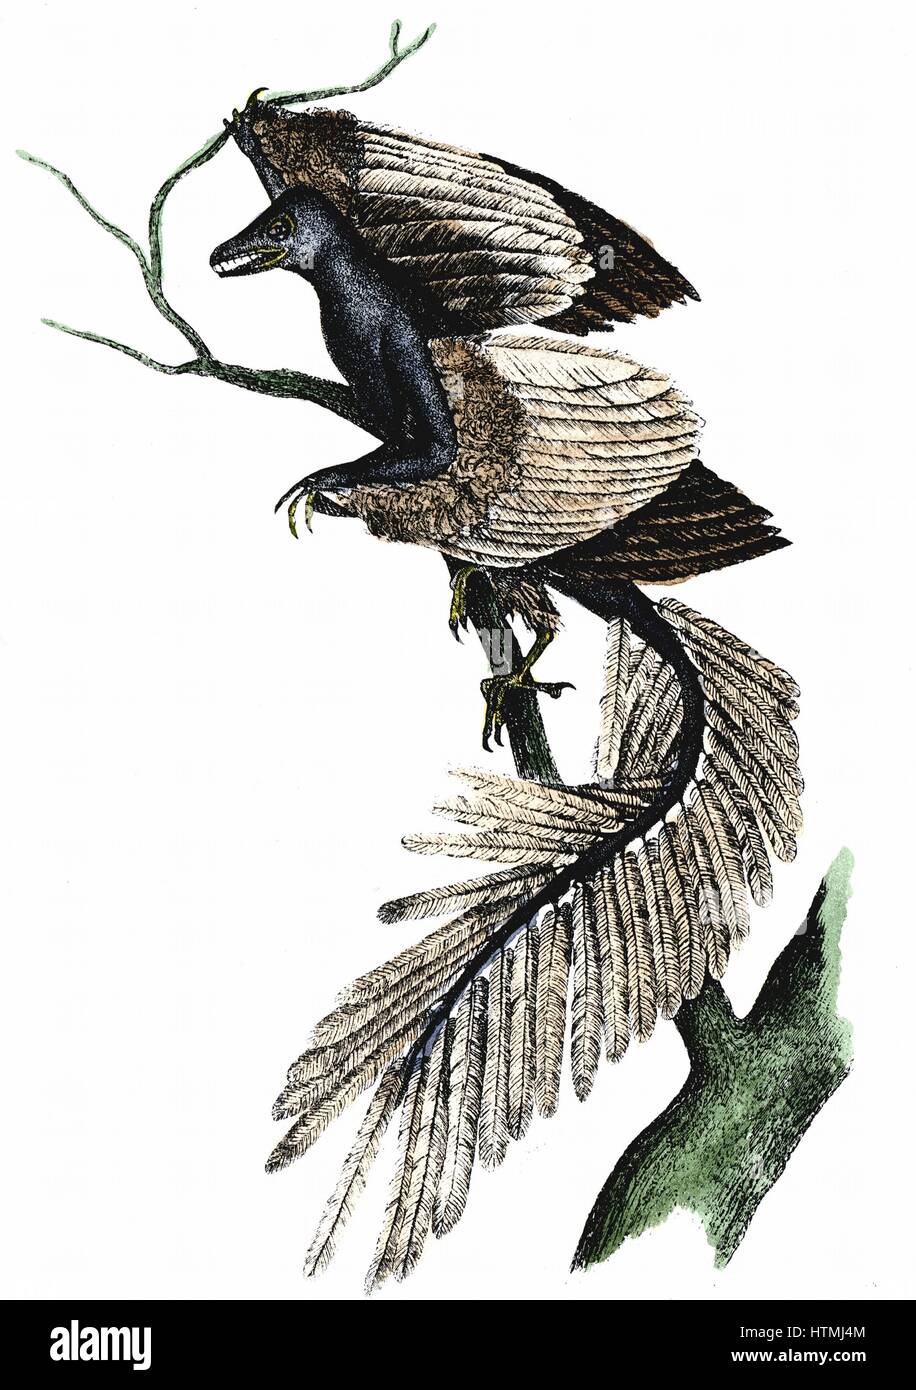 Archaeopteryx - Il primo uccello. Artista della ricostruzione di archaeopteryx che fece la sua comparsa circa 170 milioni di anni fa, sulla base di registrazioni di fossili. Pubblicato stampa 1886. Colorate a mano l'incisione Foto Stock